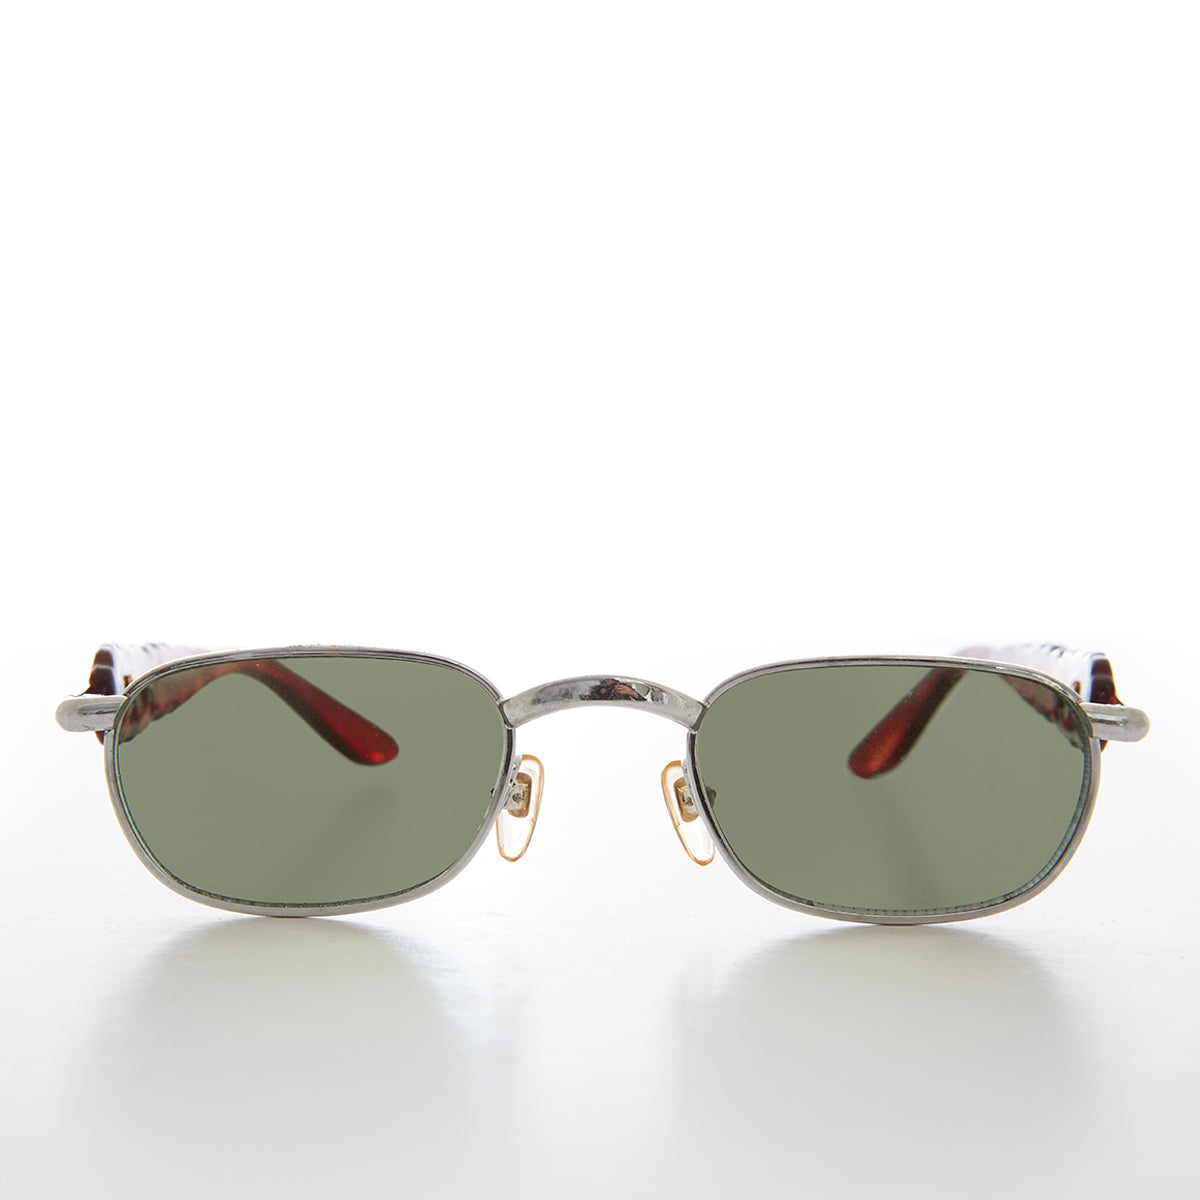 90s Unique Rectangular Vintage Sunglasses 